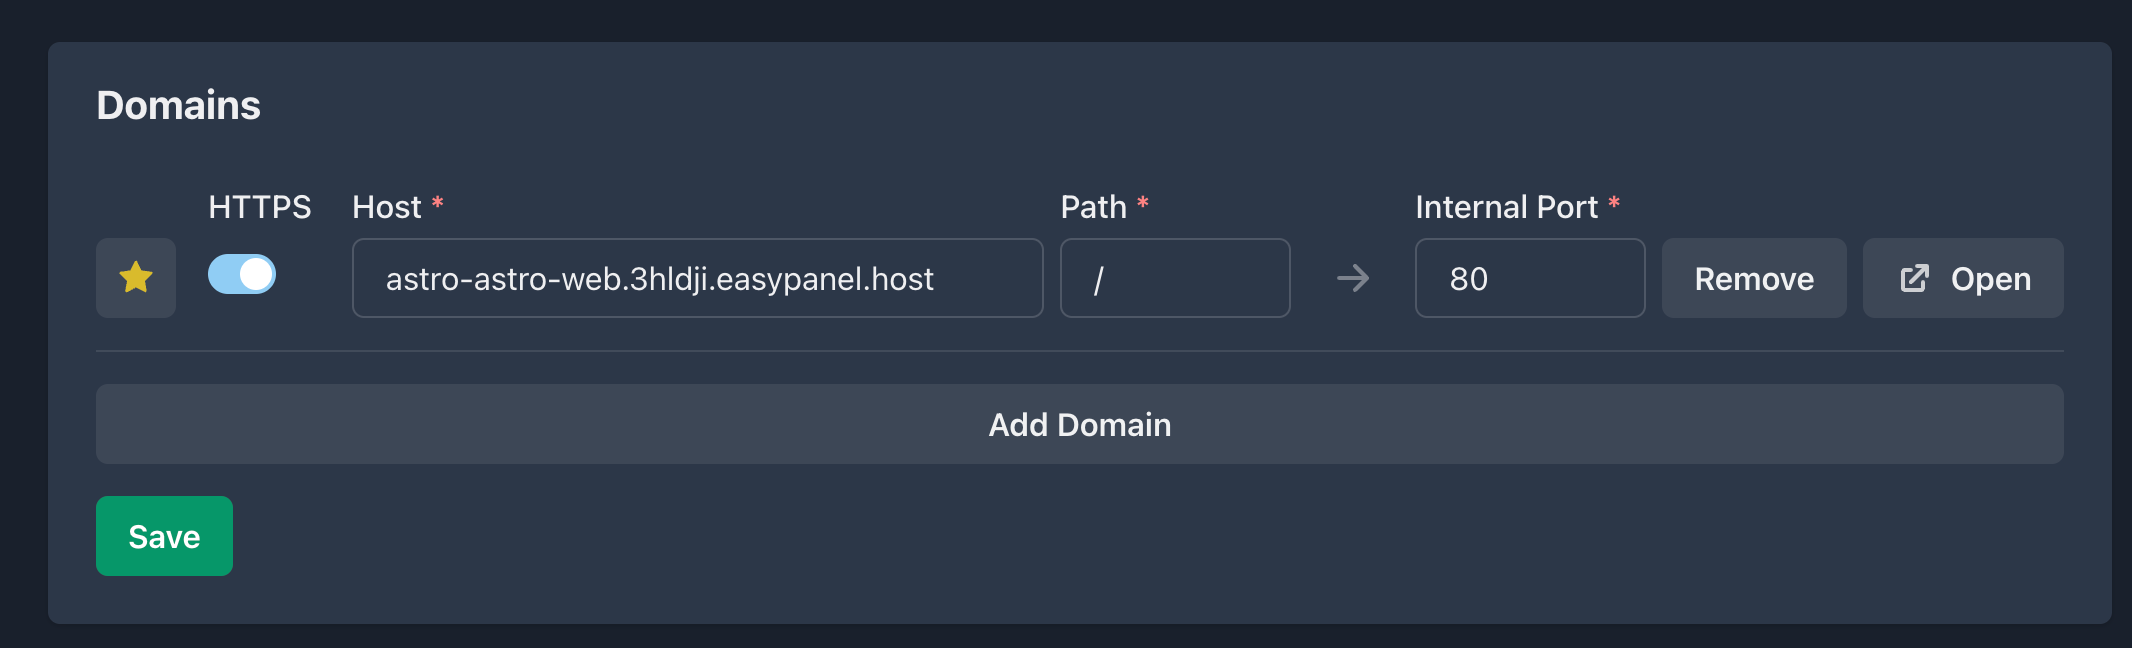 easypanel domain